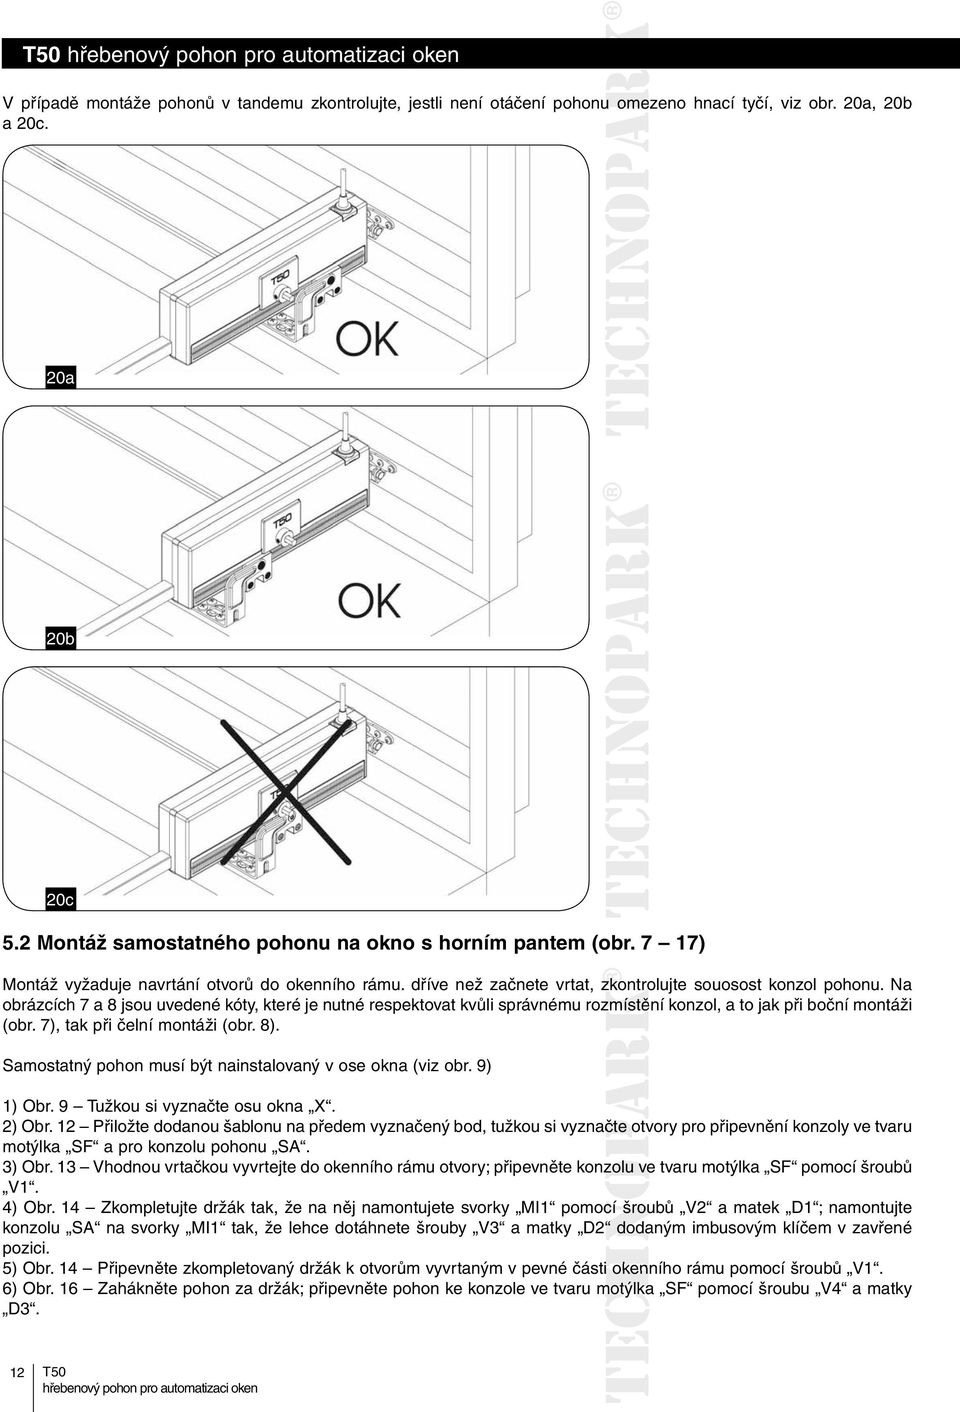 Na obrázcích 7 a 8 jsou uvedené kóty, které je nutné respektovat kvůli správnému rozmístění konzol, a to jak při boční montáži (obr. 7), tak při čelní montáži (obr. 8).